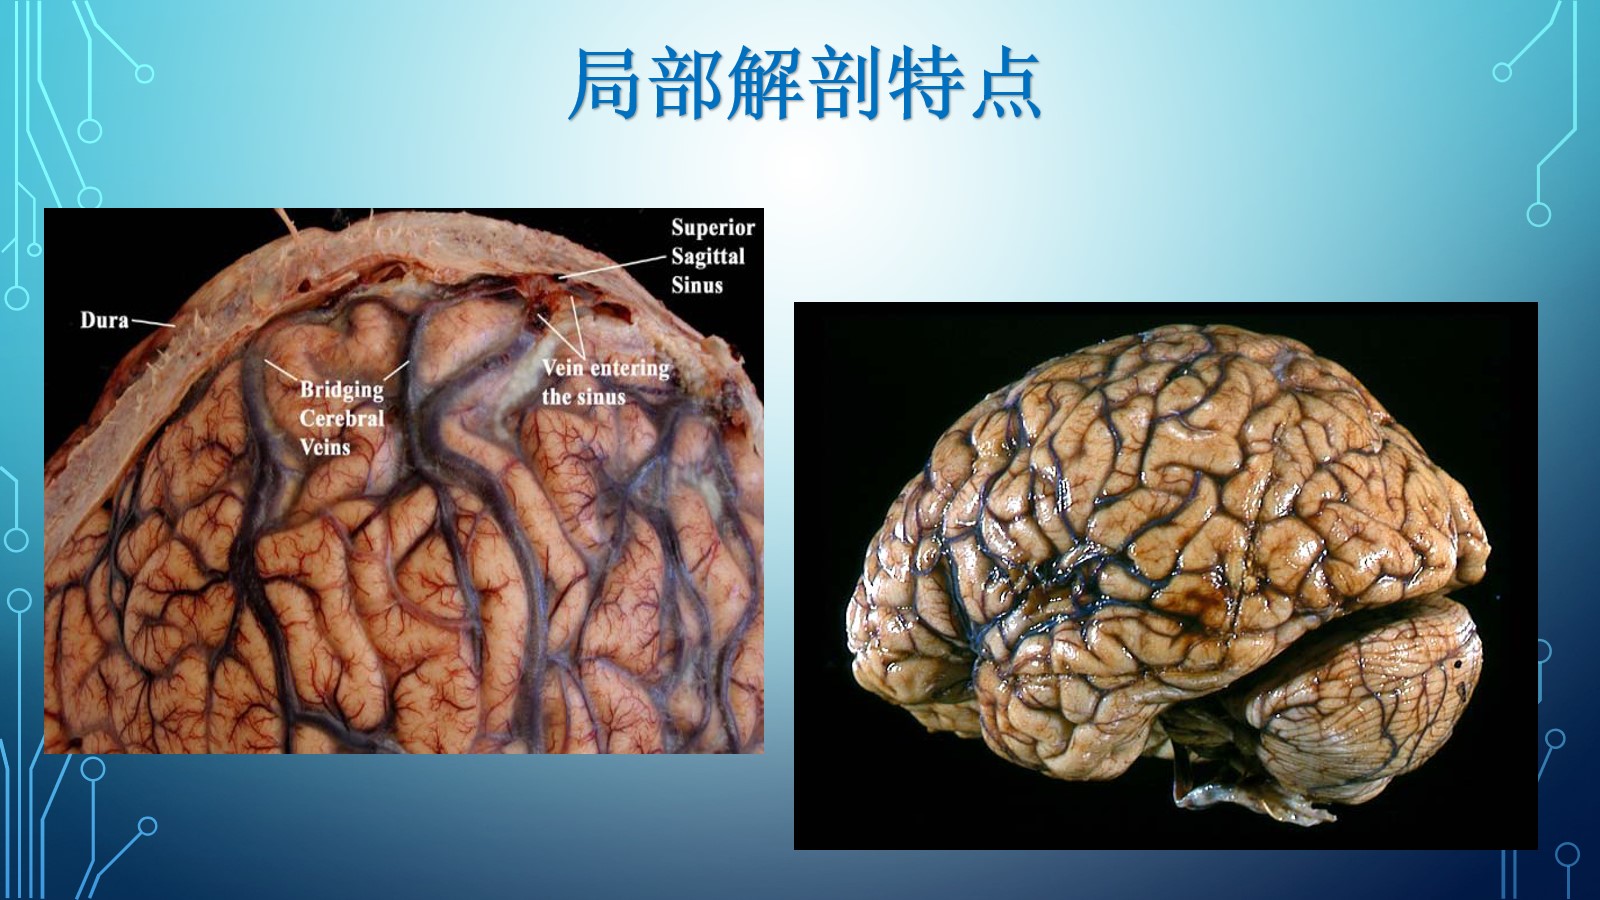 头颅CT示:左基底节区软化灶 - 病例中心(诊疗助手) - 爱爱医医学网